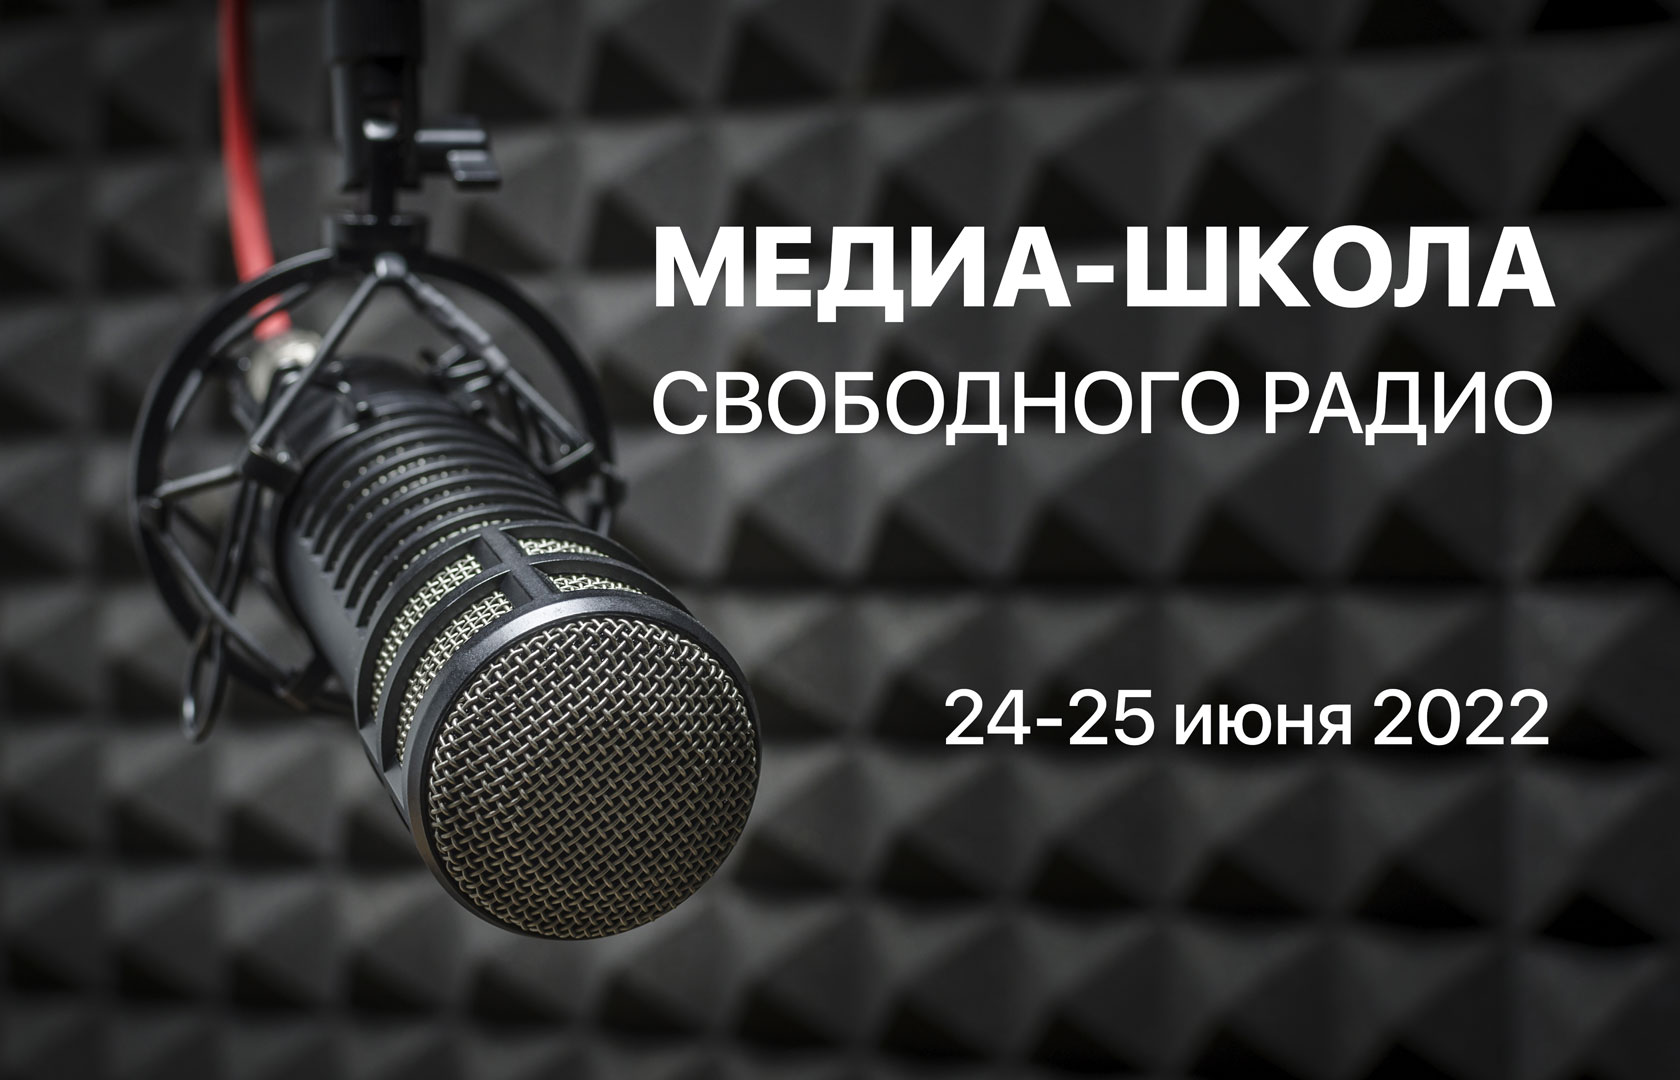 Медиа-Школа Свободного радио<br>24-25 июня 2022